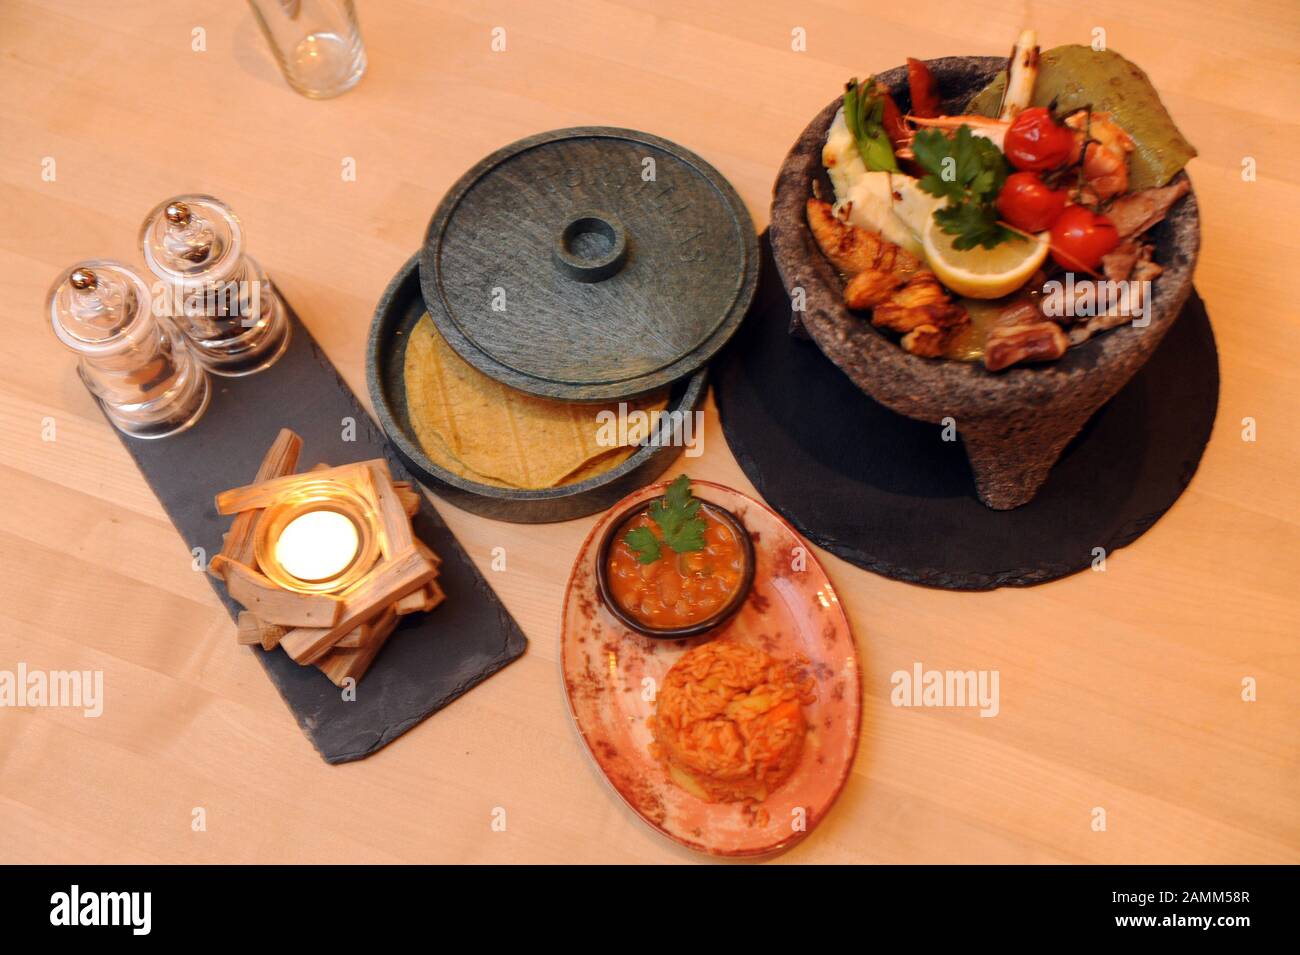 Das typische mexikanische Gericht 'Molcajete' im mexikanischen Restaurant  'Machete' am Giesinger Berg in München. [Automatisierte Übersetzung]  Stockfotografie - Alamy